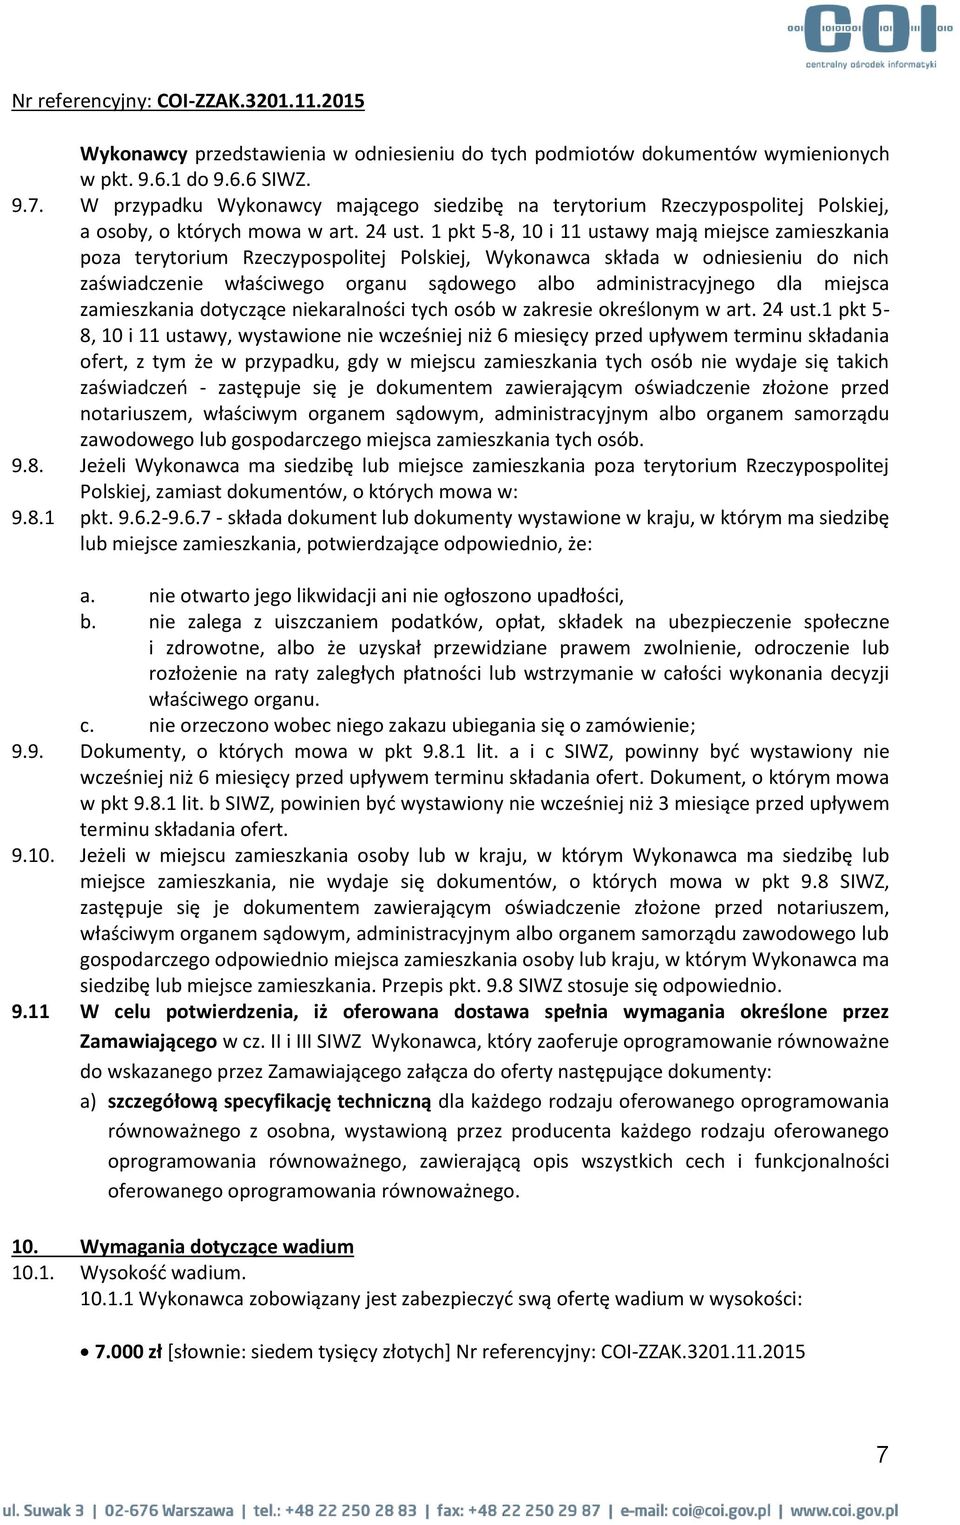 1 pkt 5-8, 10 i 11 ustawy mają miejsce zamieszkania poza terytorium Rzeczypospolitej Polskiej, Wykonawca składa w odniesieniu do nich zaświadczenie właściwego organu sądowego albo administracyjnego